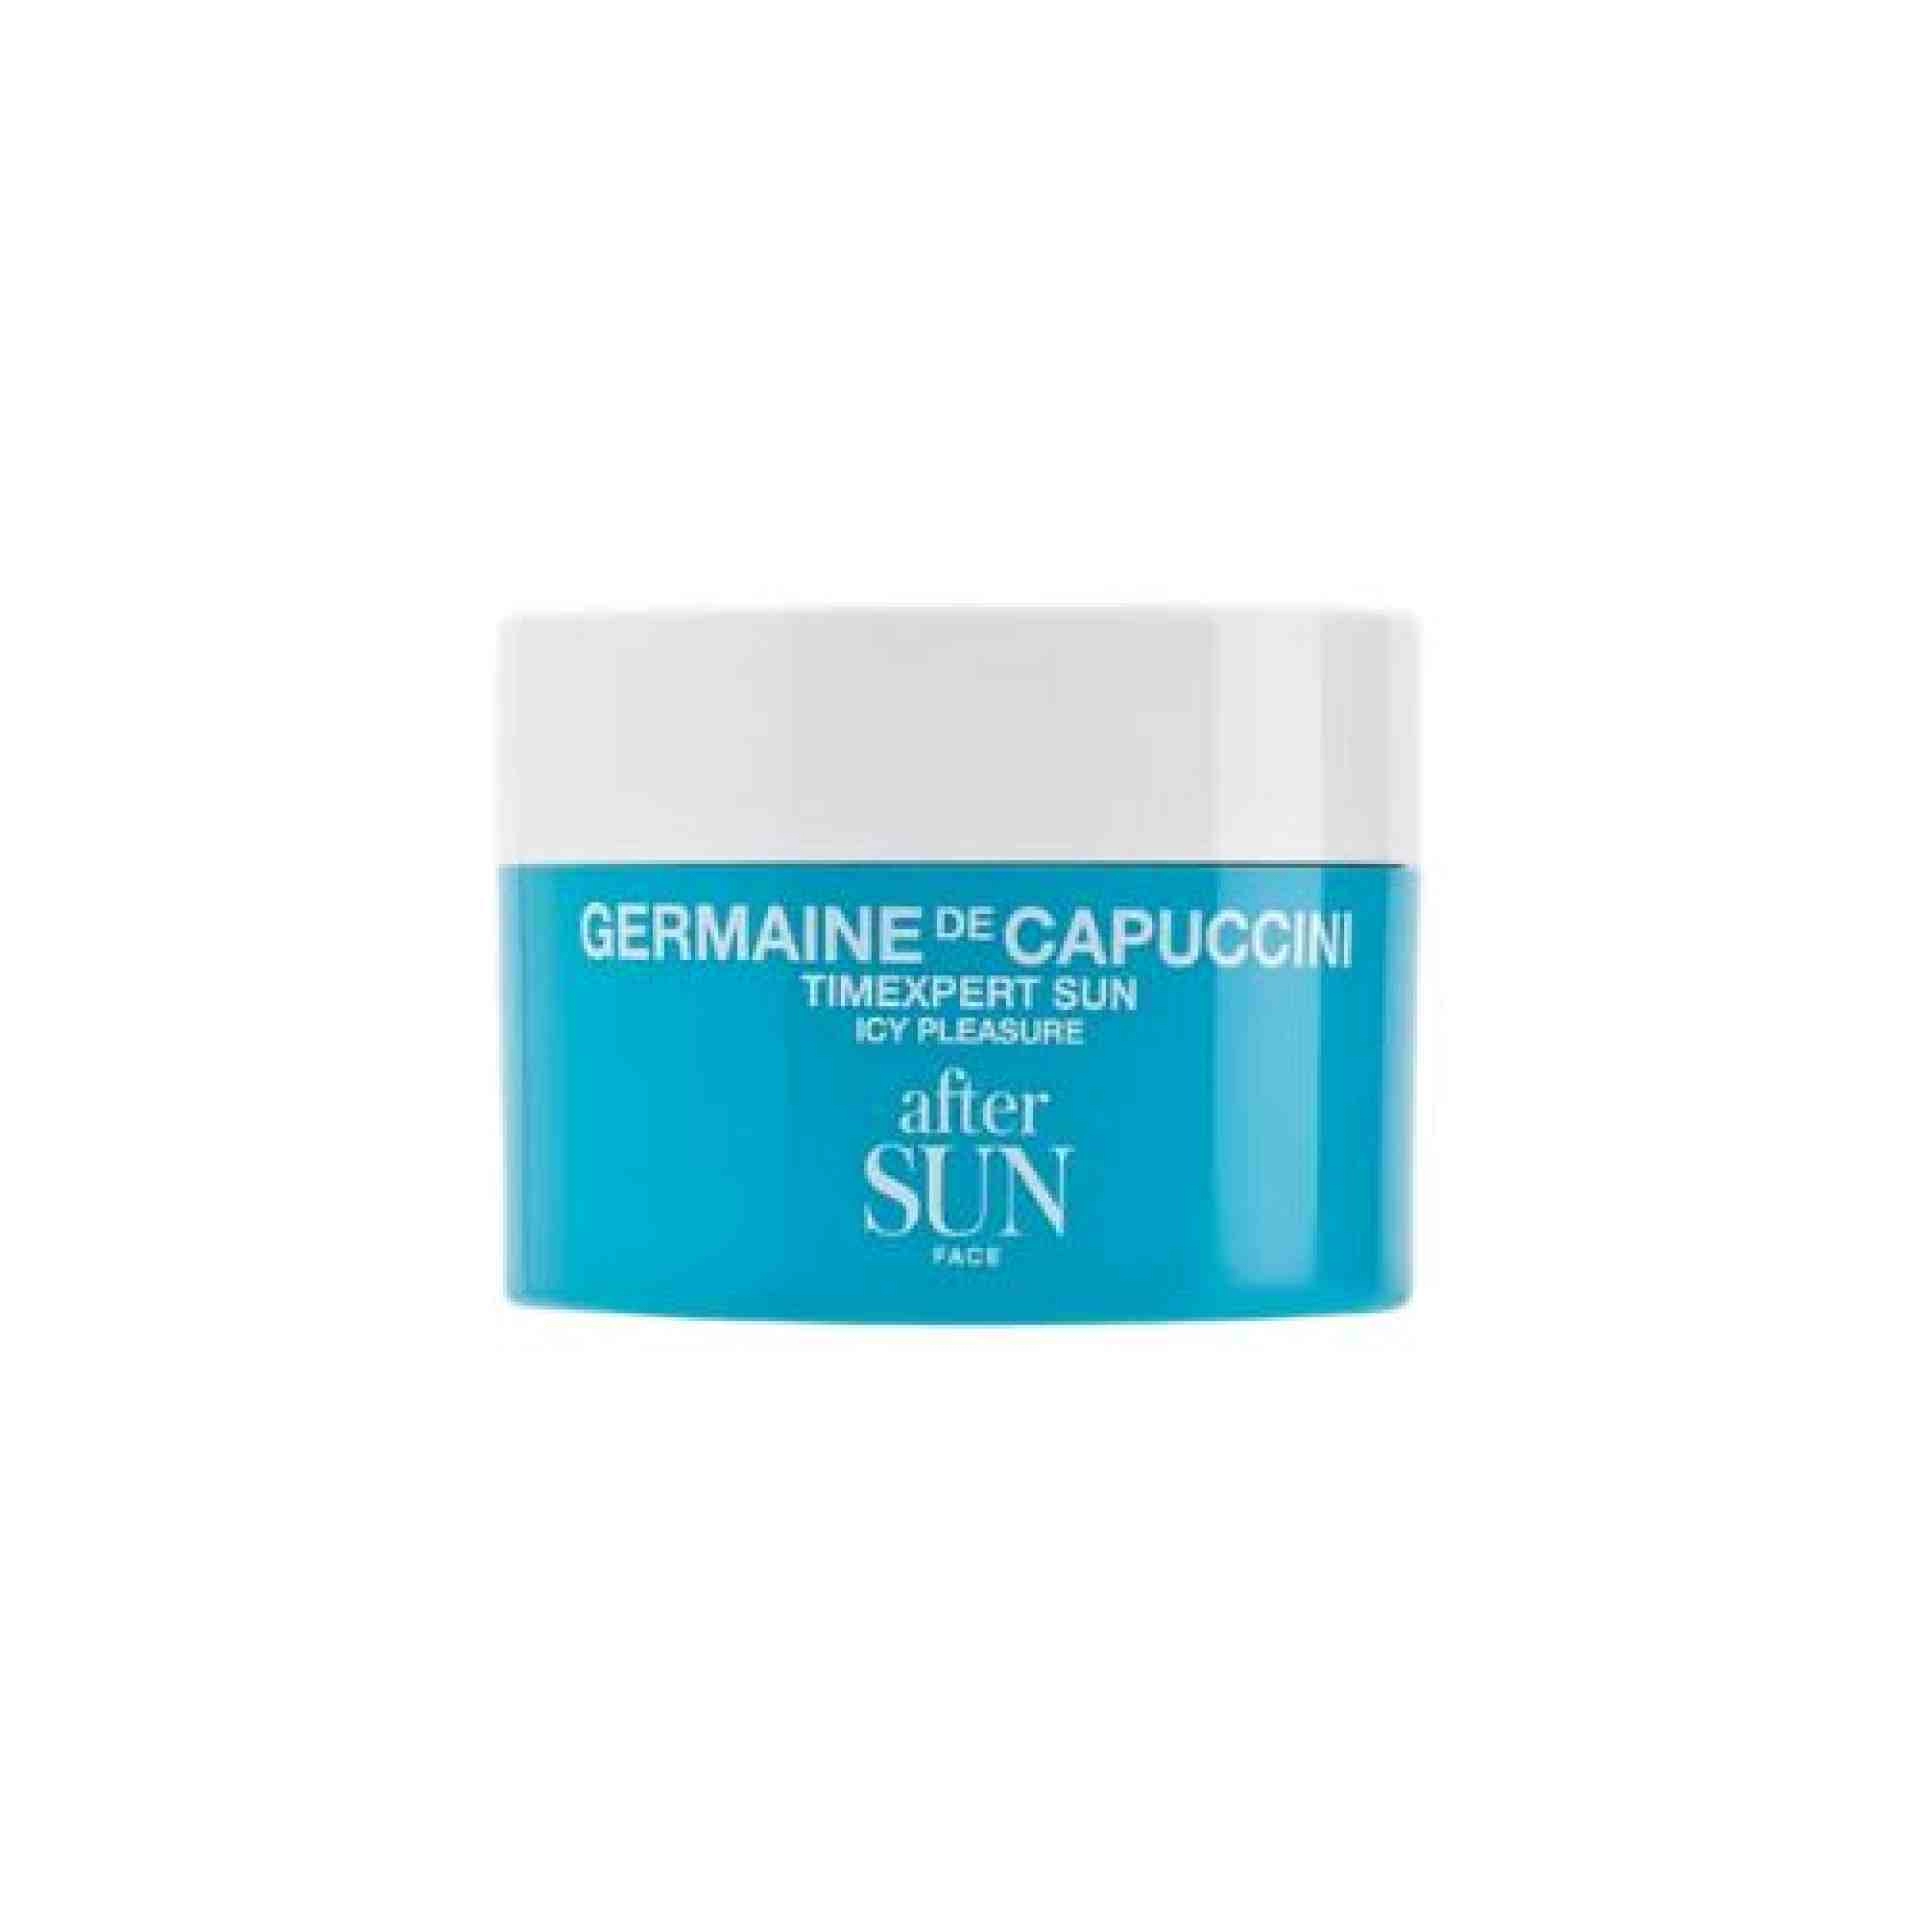 Icy Pleasure After-Sun Facial 50 ml - Timexpert Sun - Germaine de Capuccini ®